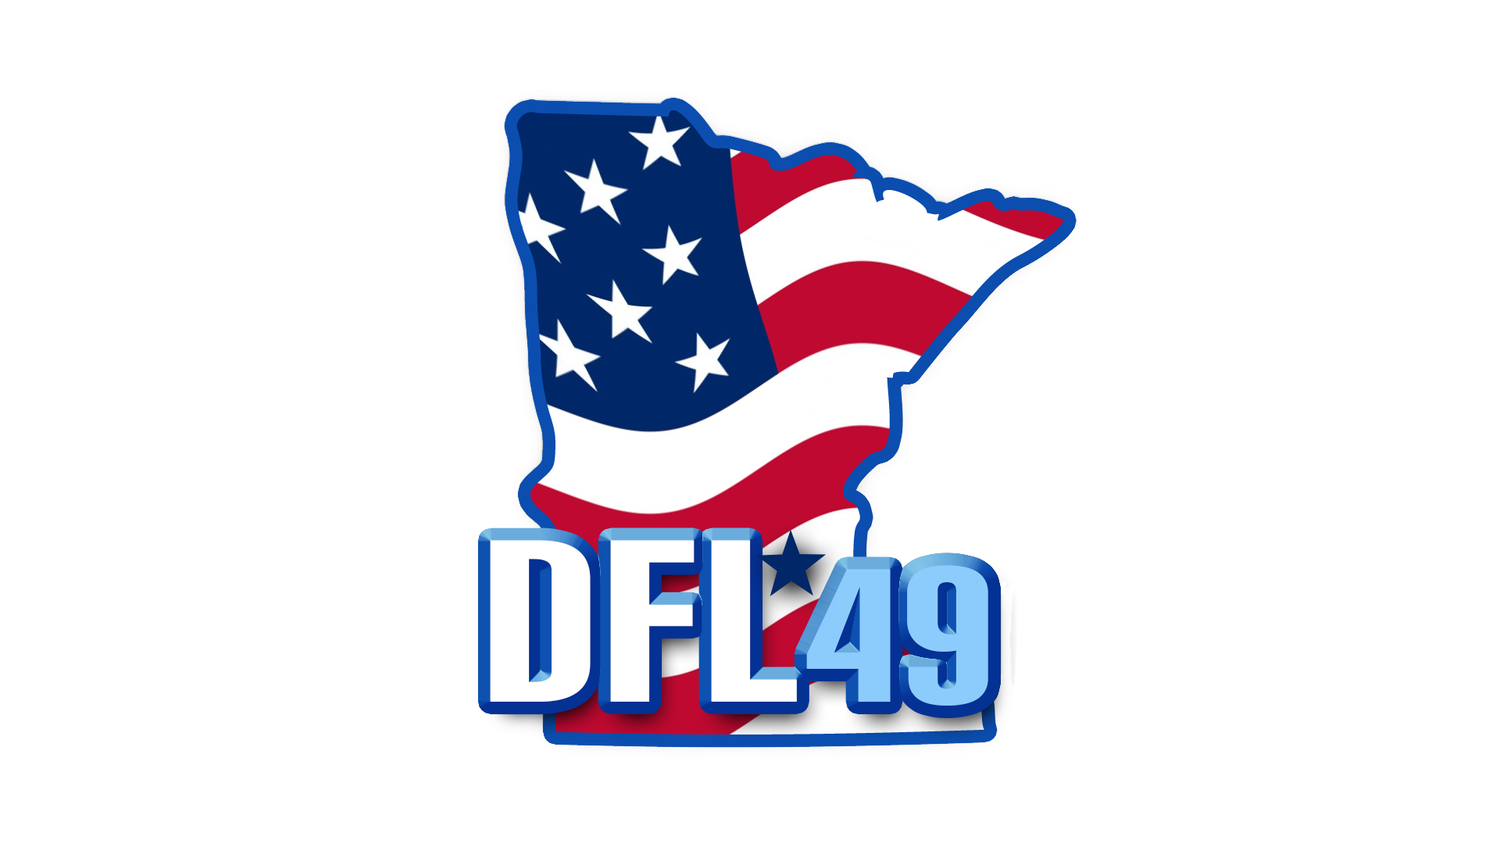 DFL49